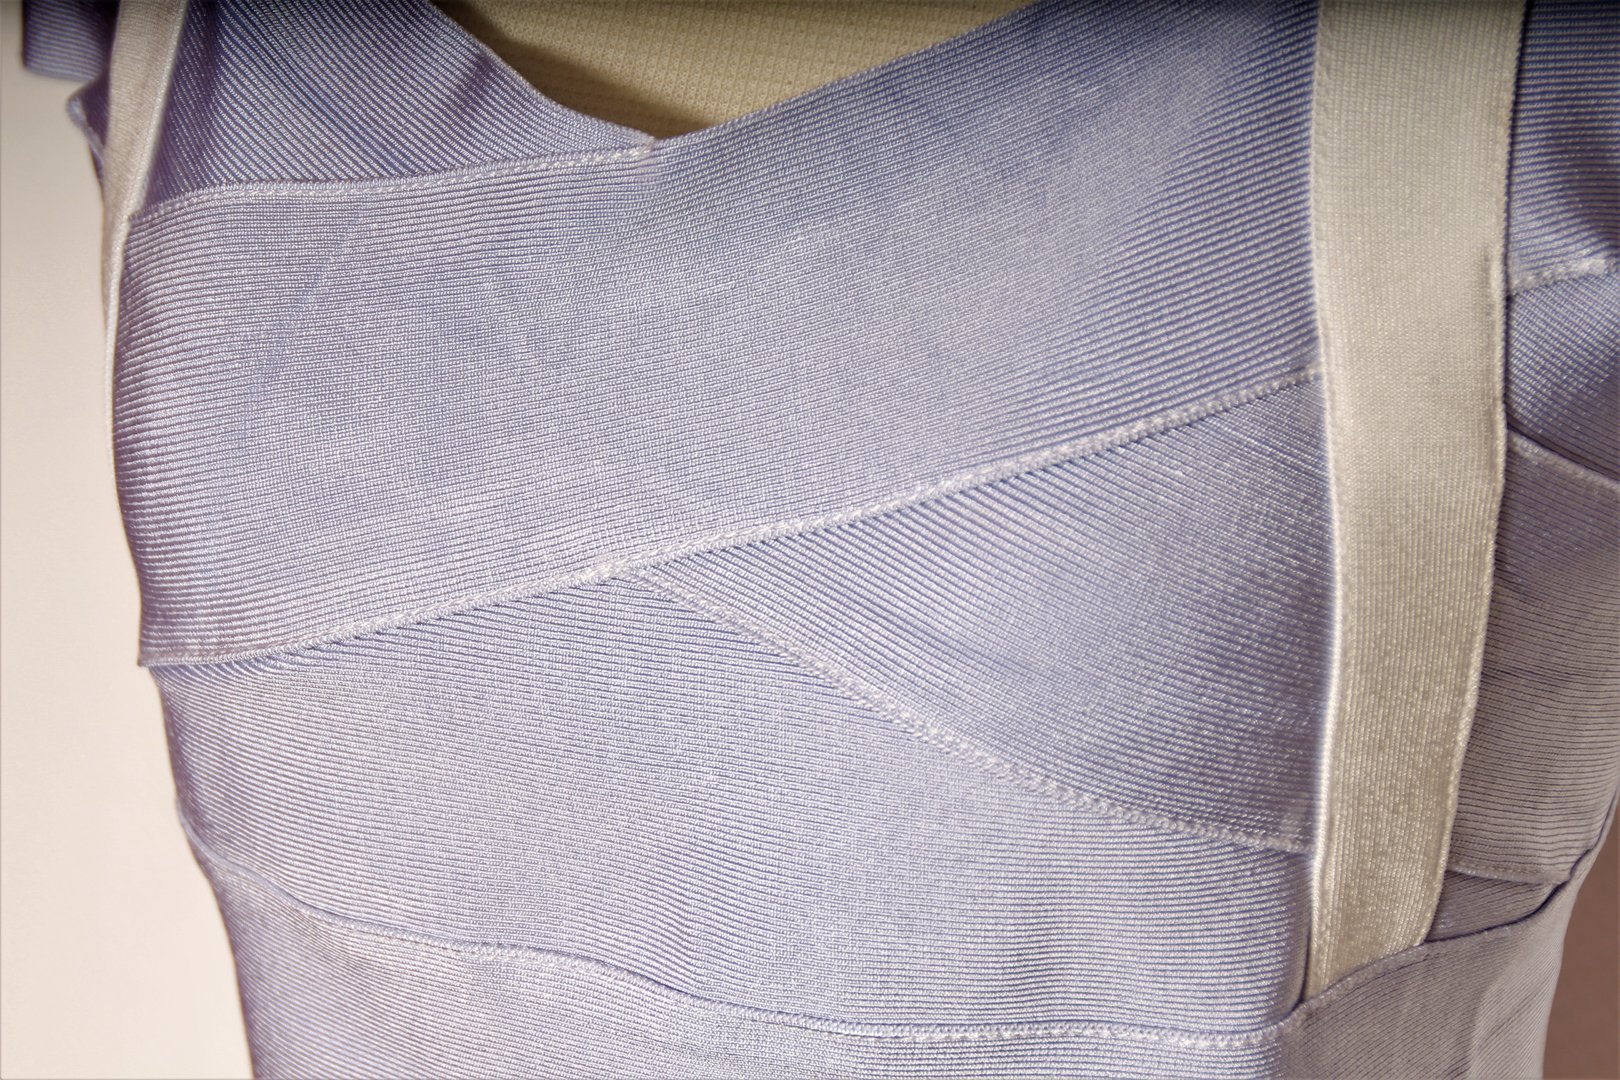 Vestido elástico de 2 piezas blanco-azul claro que abraza la figura